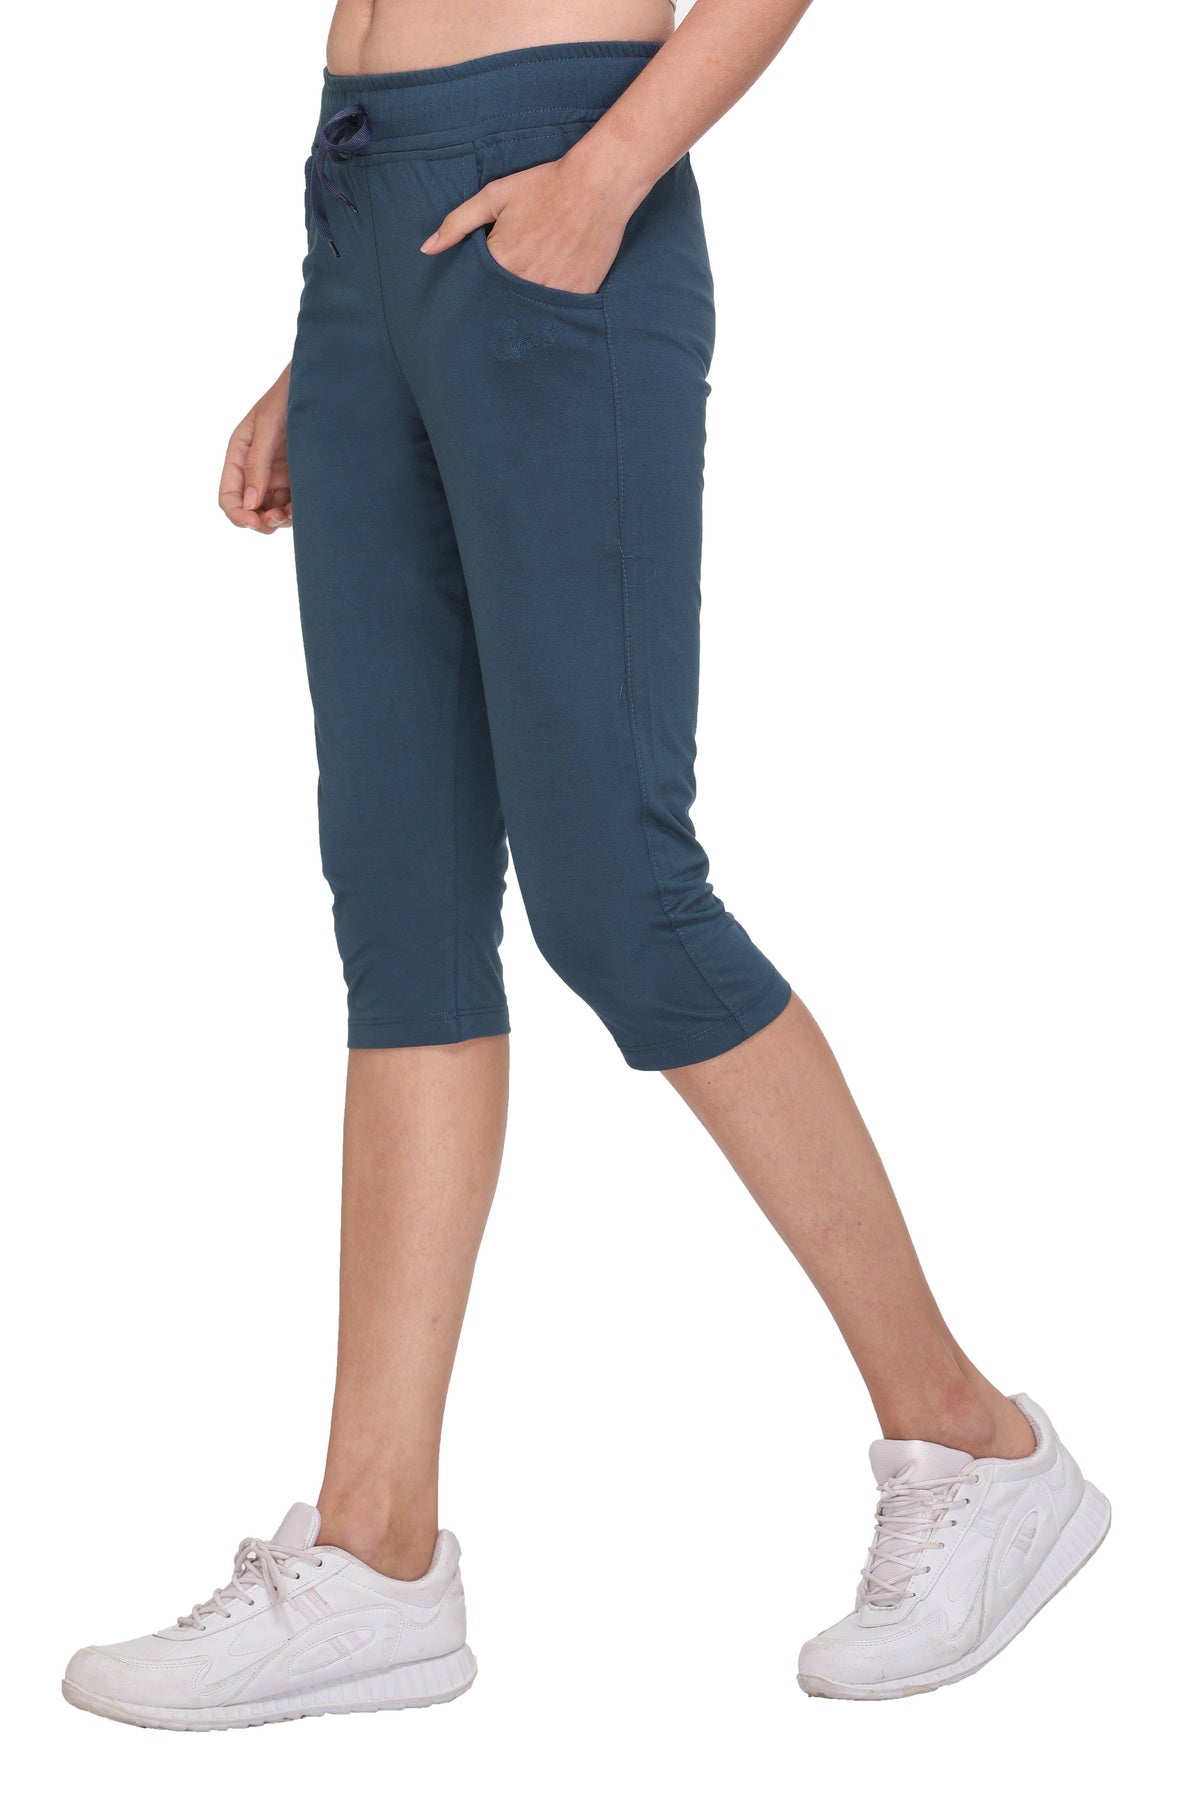 Buy VIBRANT VESTURE Cotton Capri Pants for Women Pack of 4 (3/4 Pants,Colour_Orange,Pink,Drak  Blue,Black) (XL) at